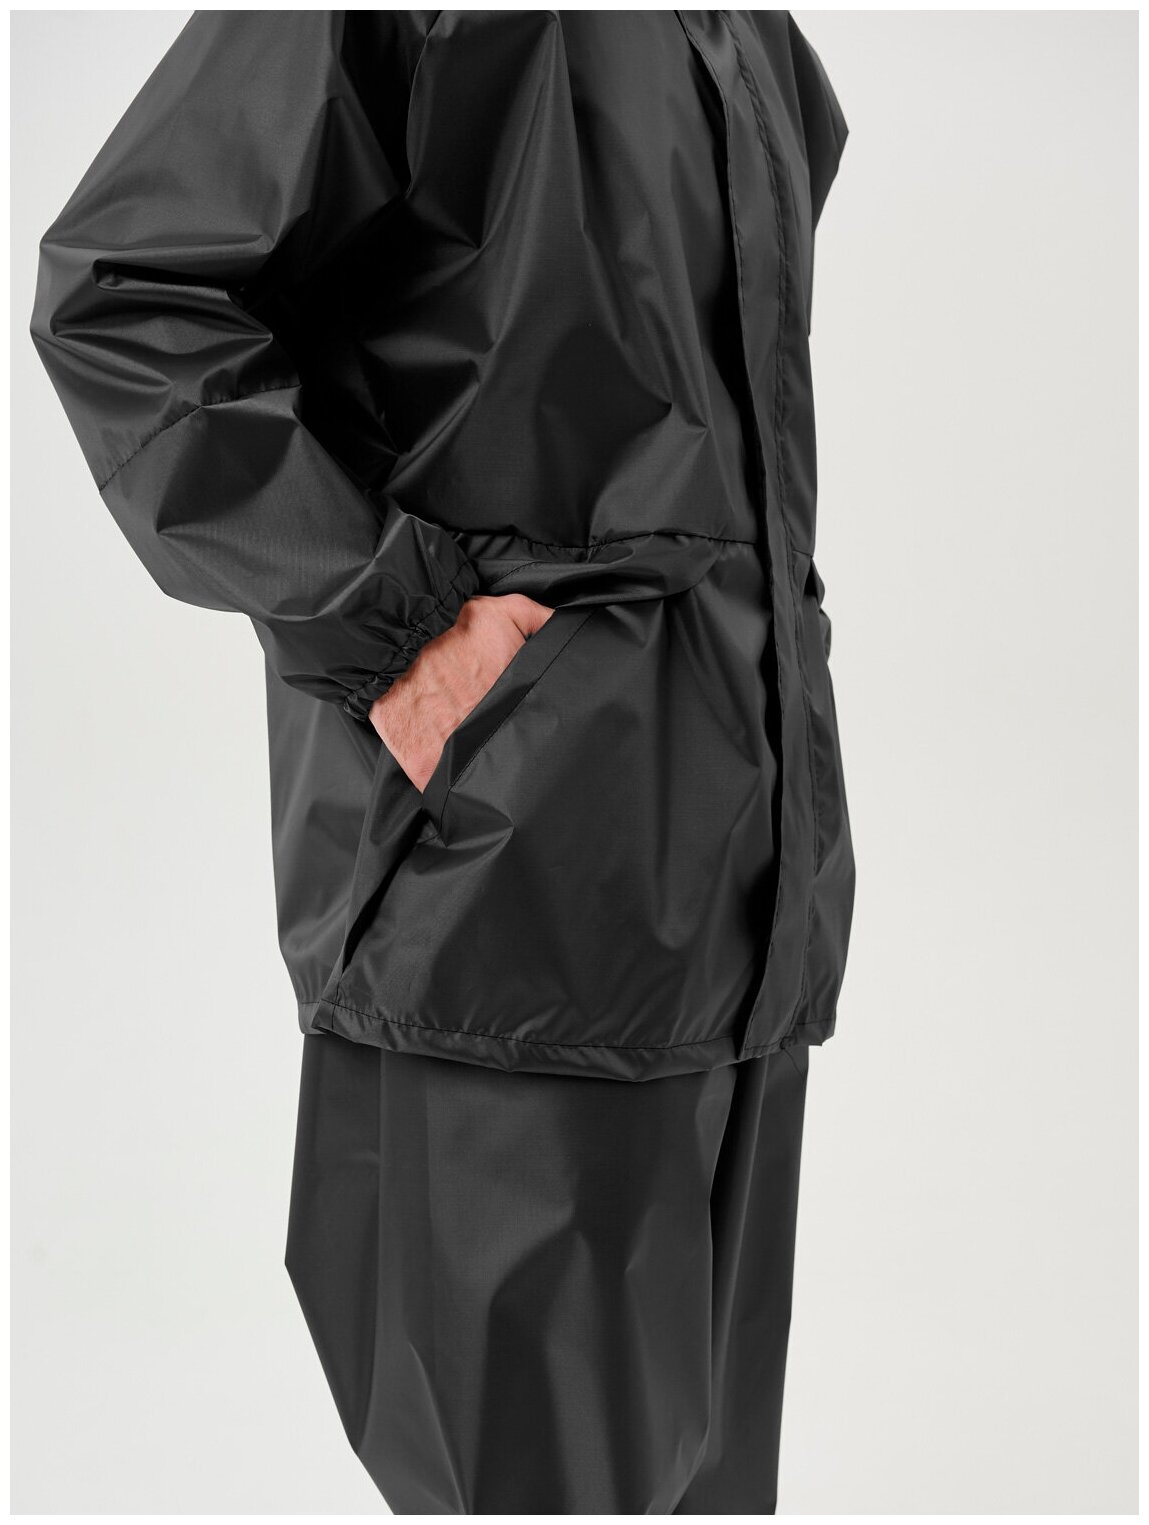 Дождевик мужской пончо накидка непромокаемый костюм KATRAN циклон (Оксфорд, темно-серый), Размер: 52-54